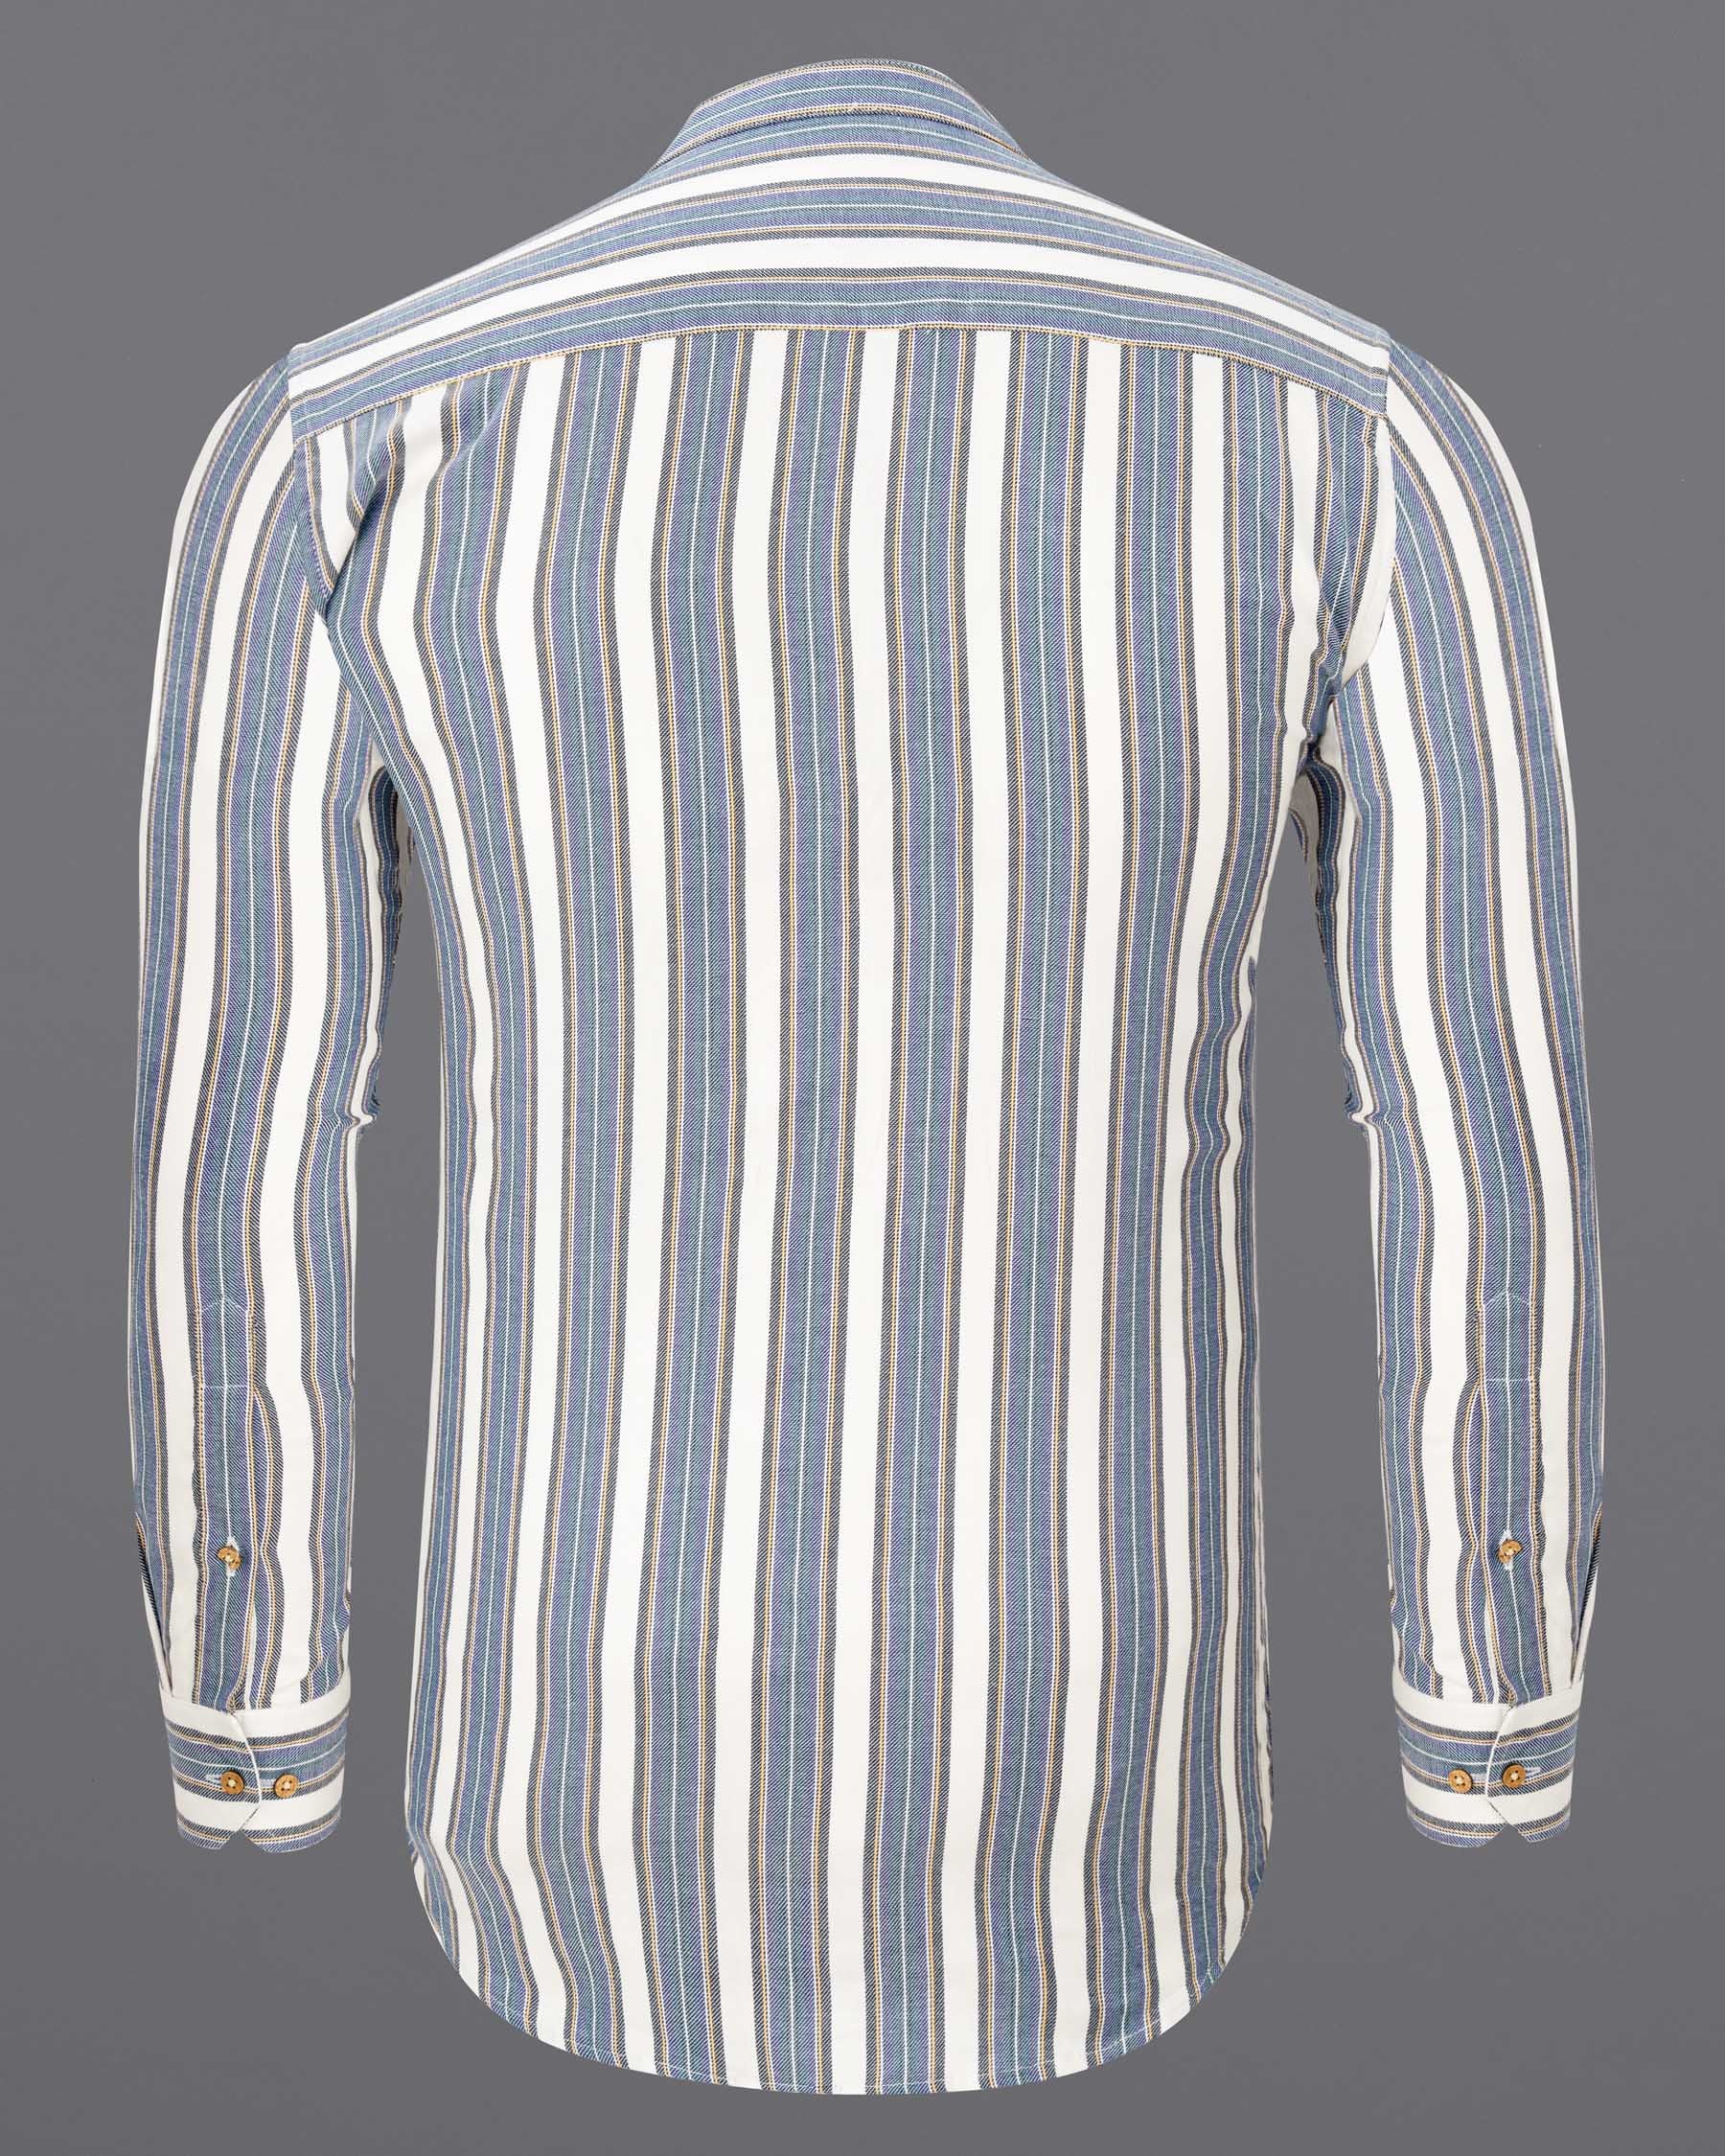 Soapstone White and denim blue Striped Twill Premium Cotton Kurta Shirt